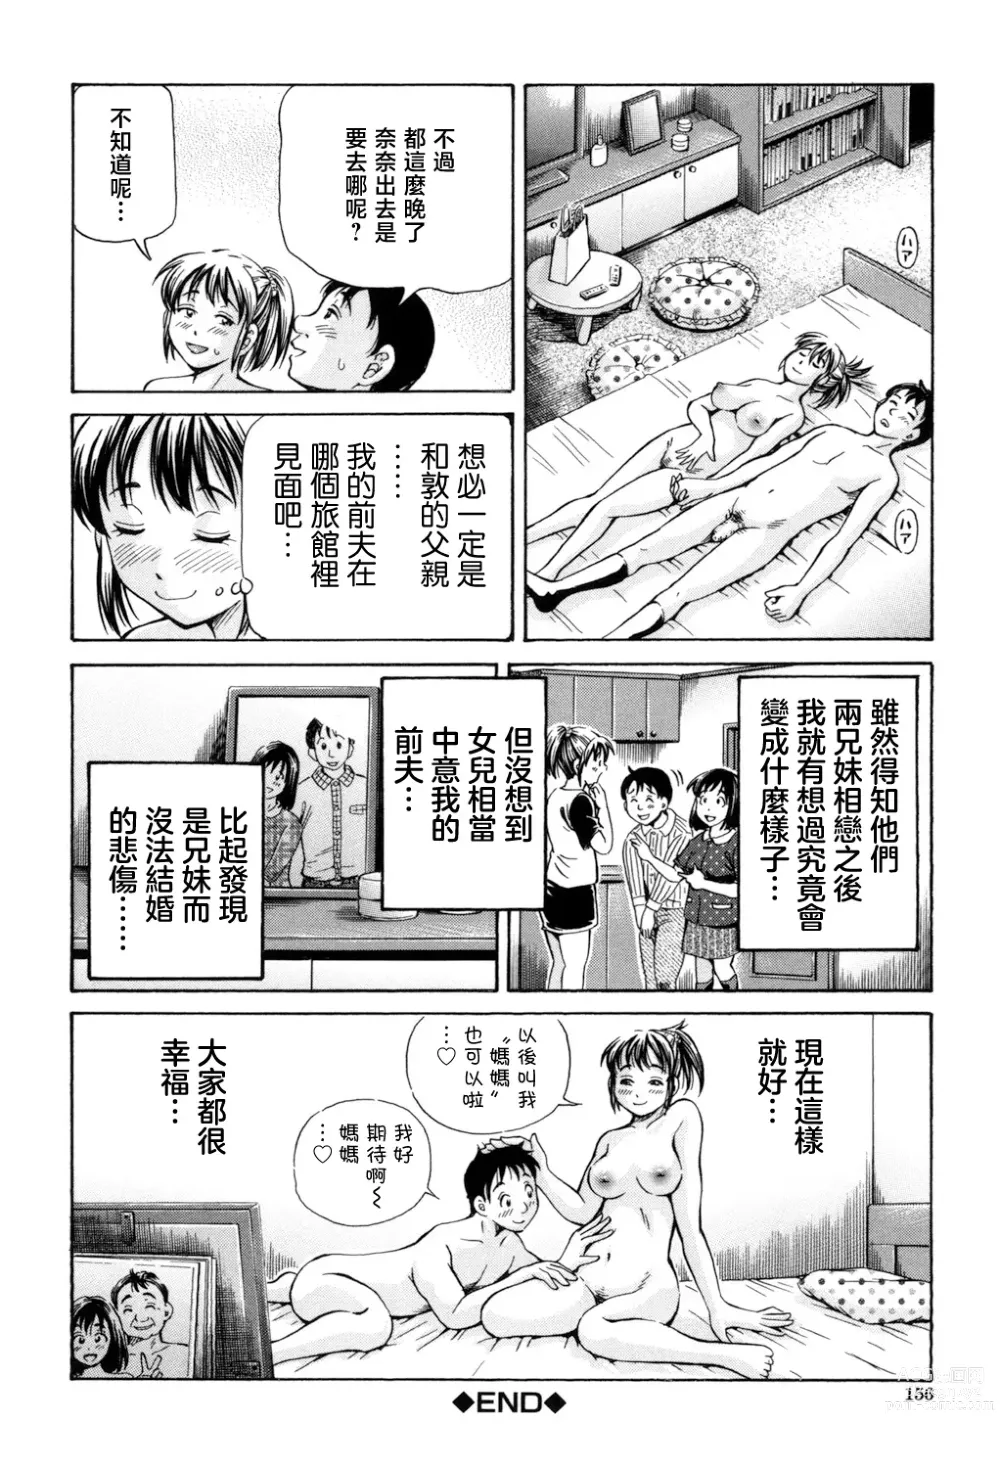 Page 48 of manga Omokage ＝ ones figure